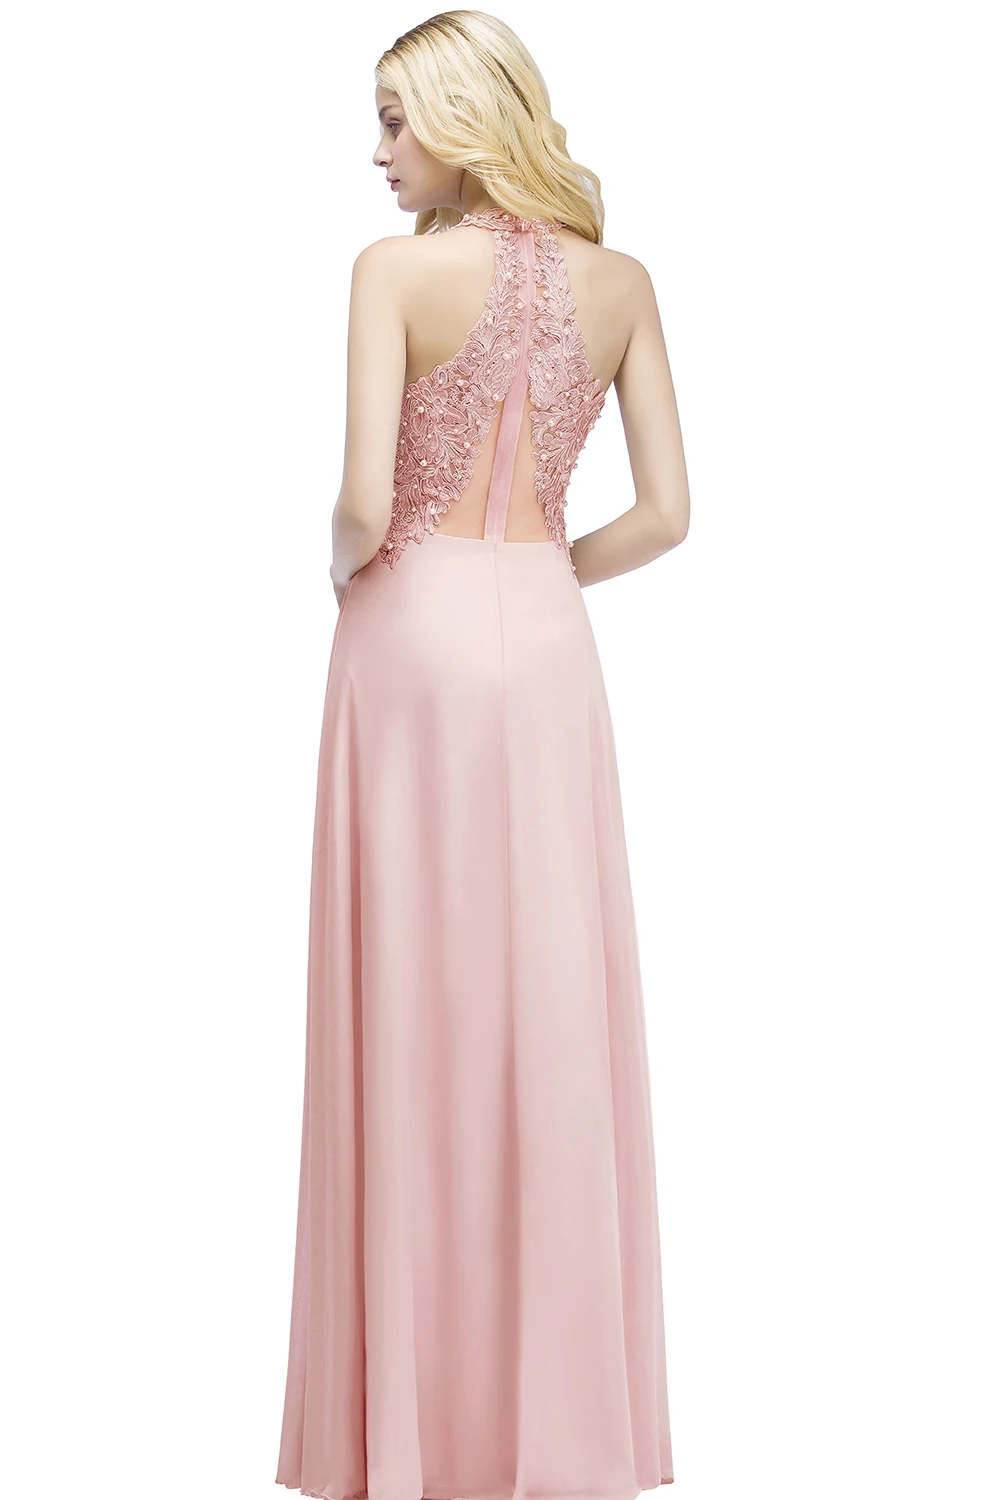 Розовое длинное платье для выпускного вечера с бретелькой длиной до пола, вечерние классический наряд платье трапециевидной формы платья с открытой спиной на выпускной с жемчугом